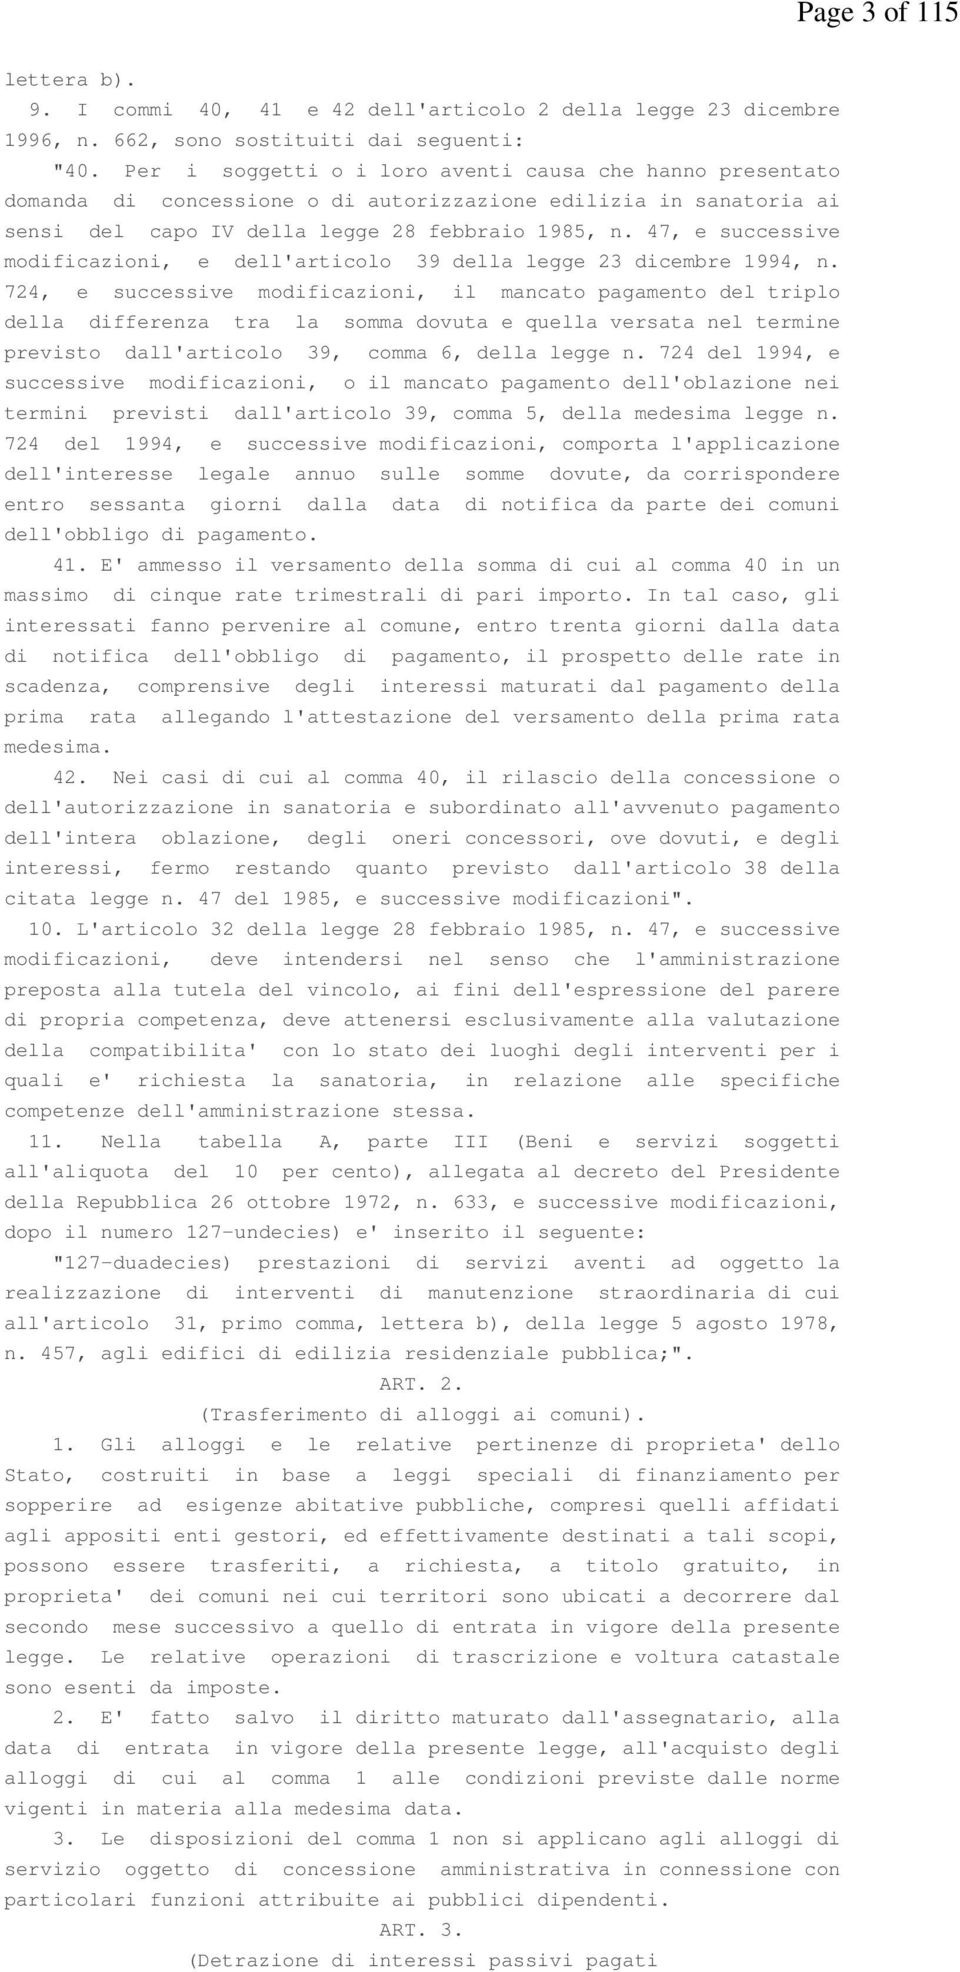 47, e successive modificazioni, e dell'articolo 39 della legge 23 dicembre 1994, n.